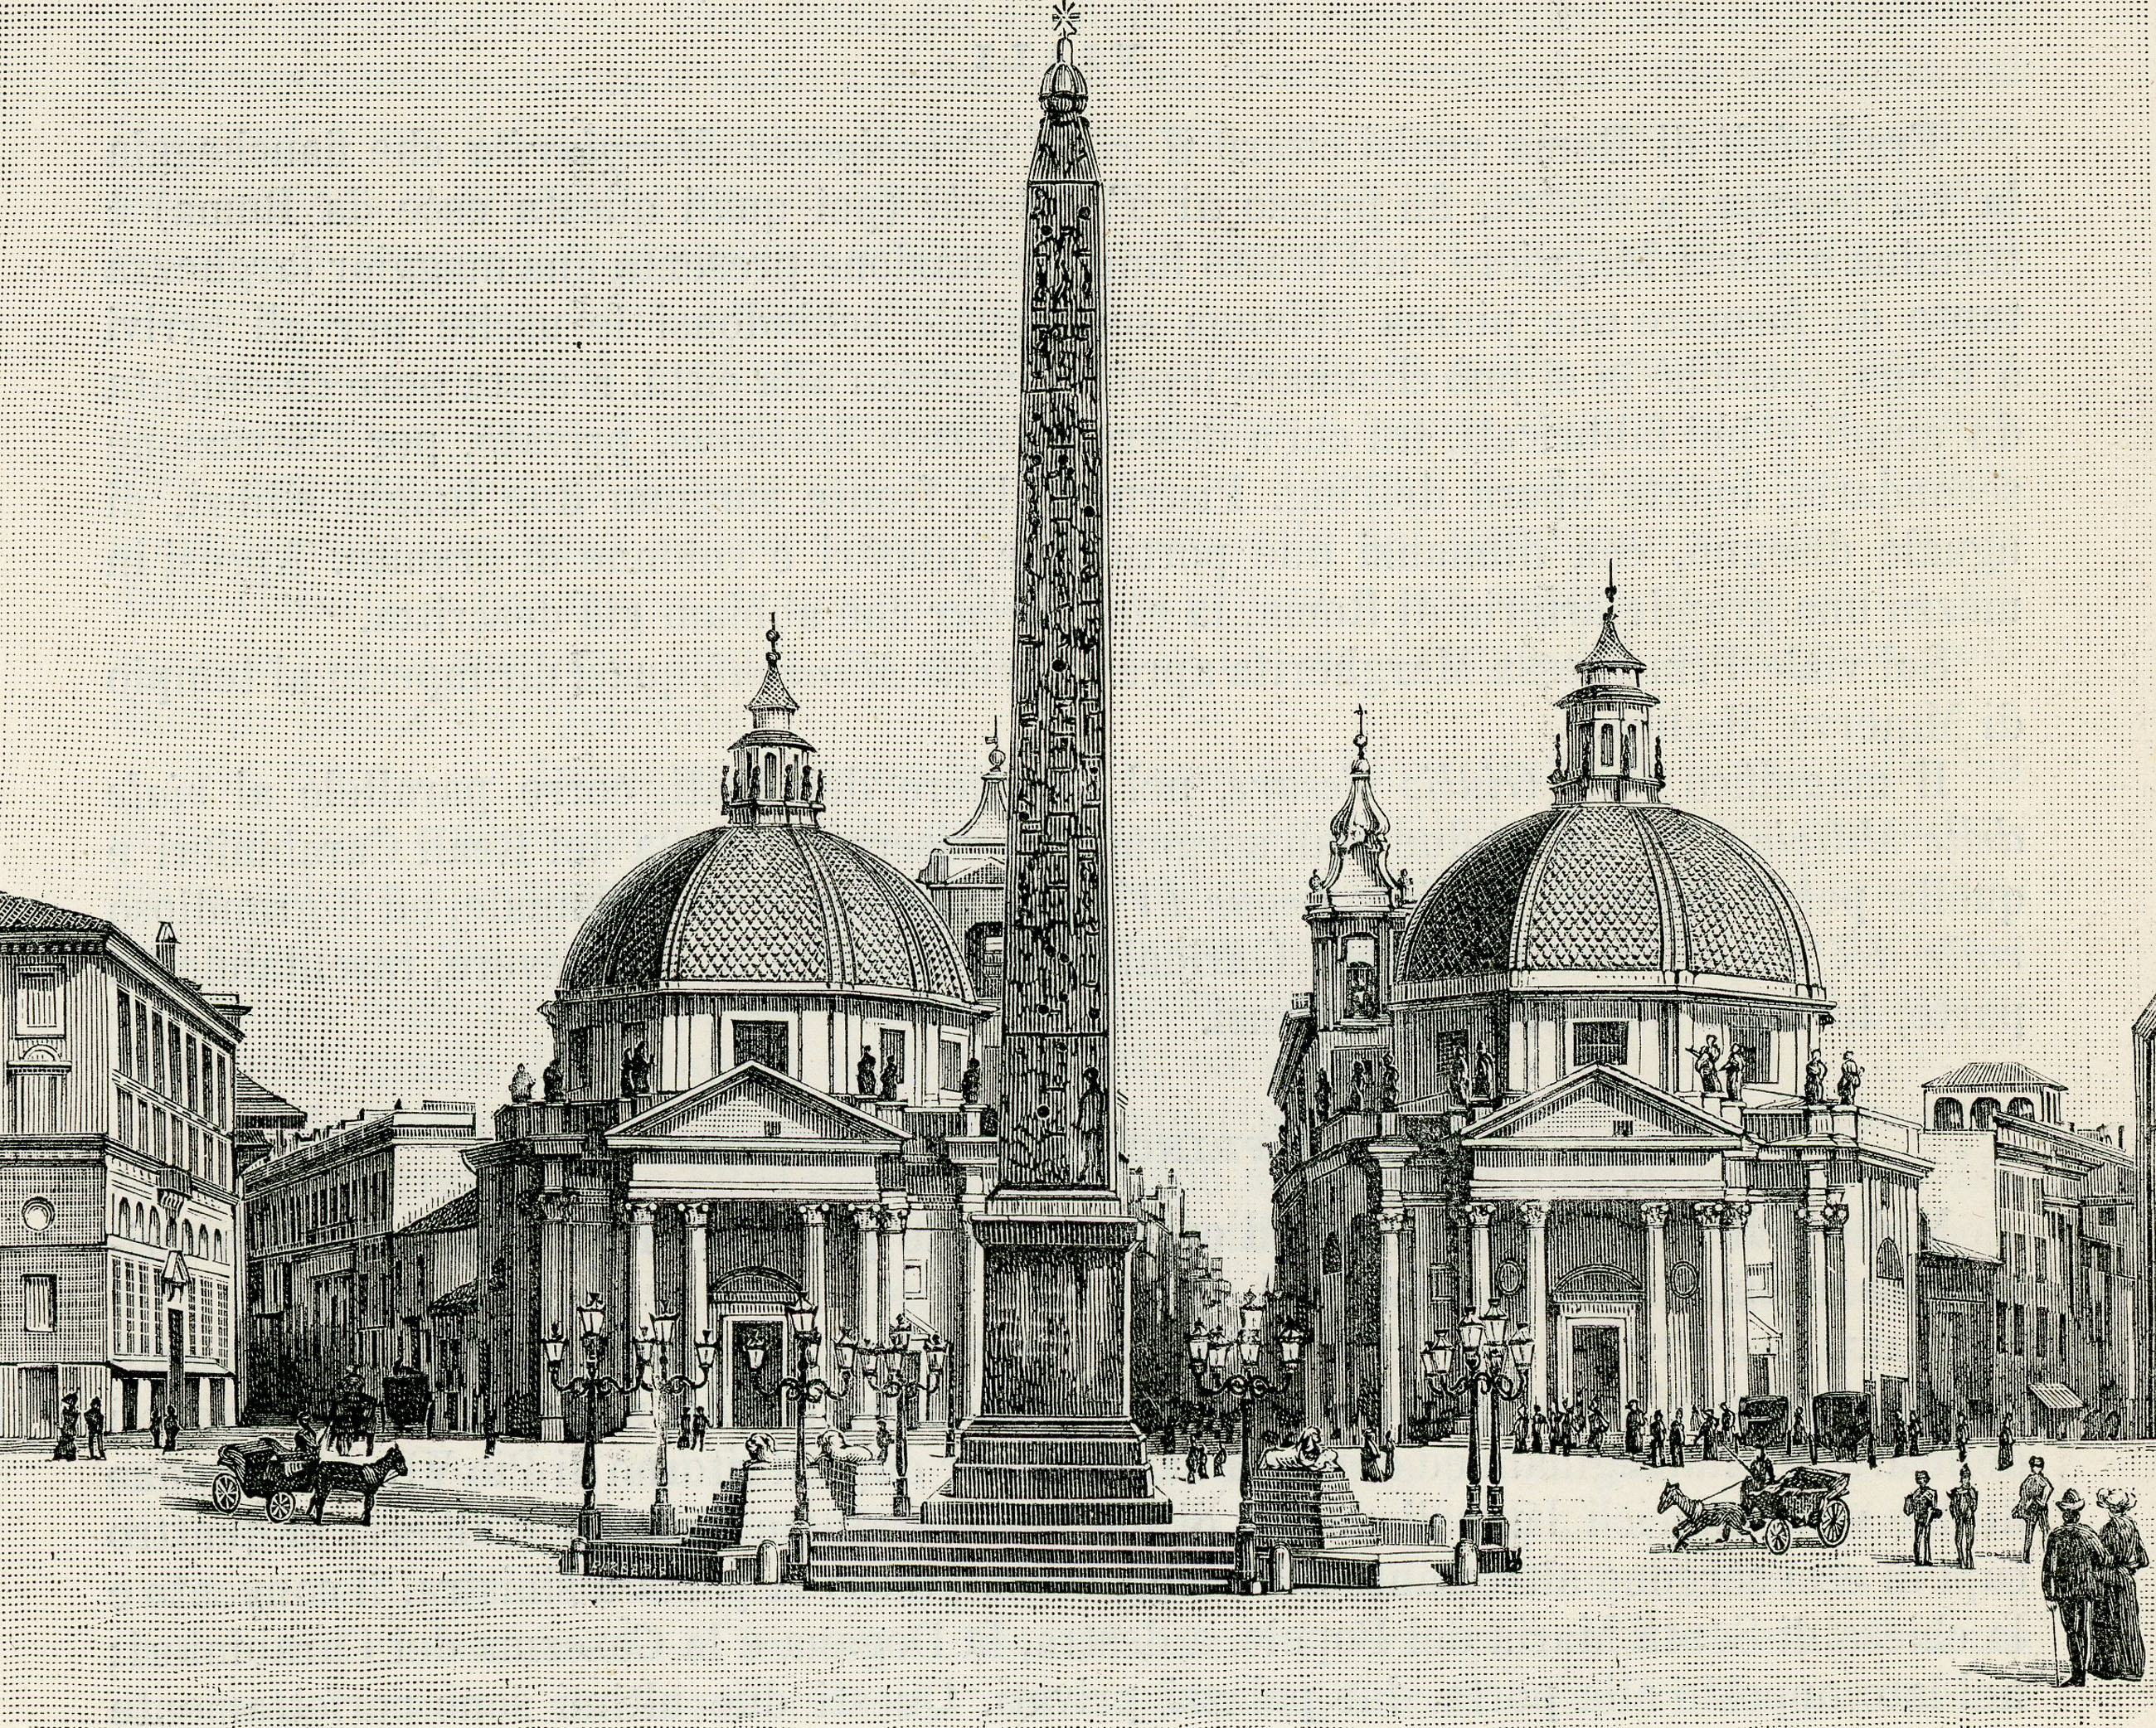 File:Roma Piazza del Popolo xilografia.jpg - Wikimedia Commons